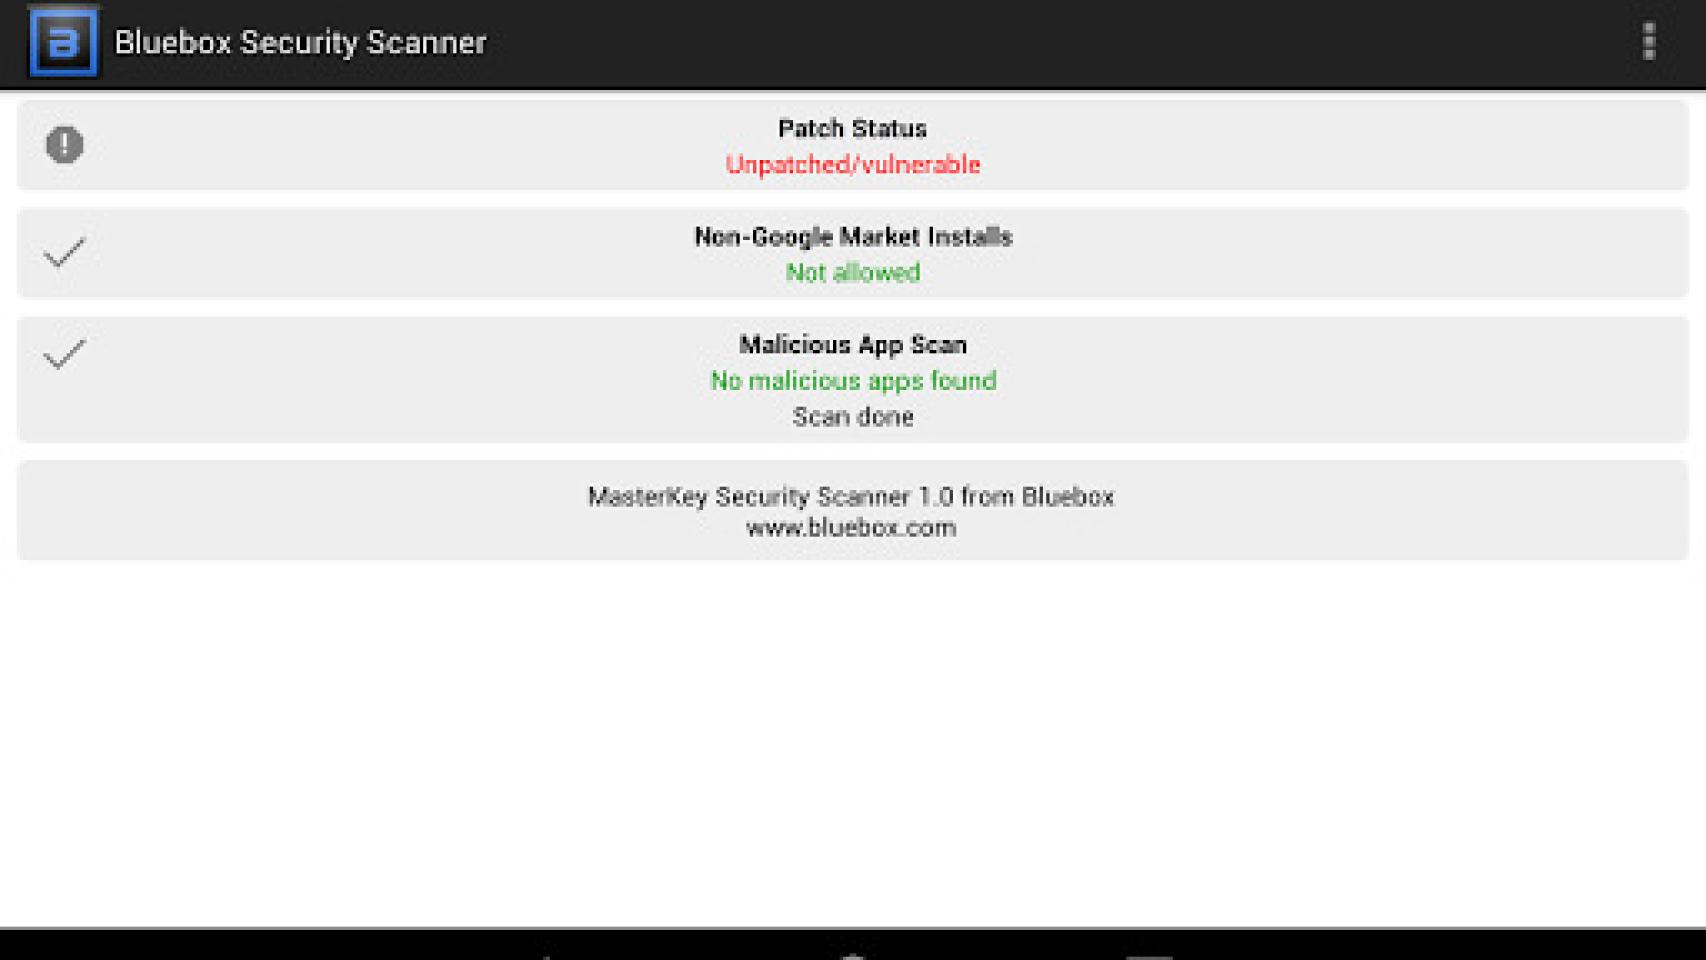 Comprueba si tu Android es vulnerable al bug de actualizaciones maliciosas con la app de Bluebox